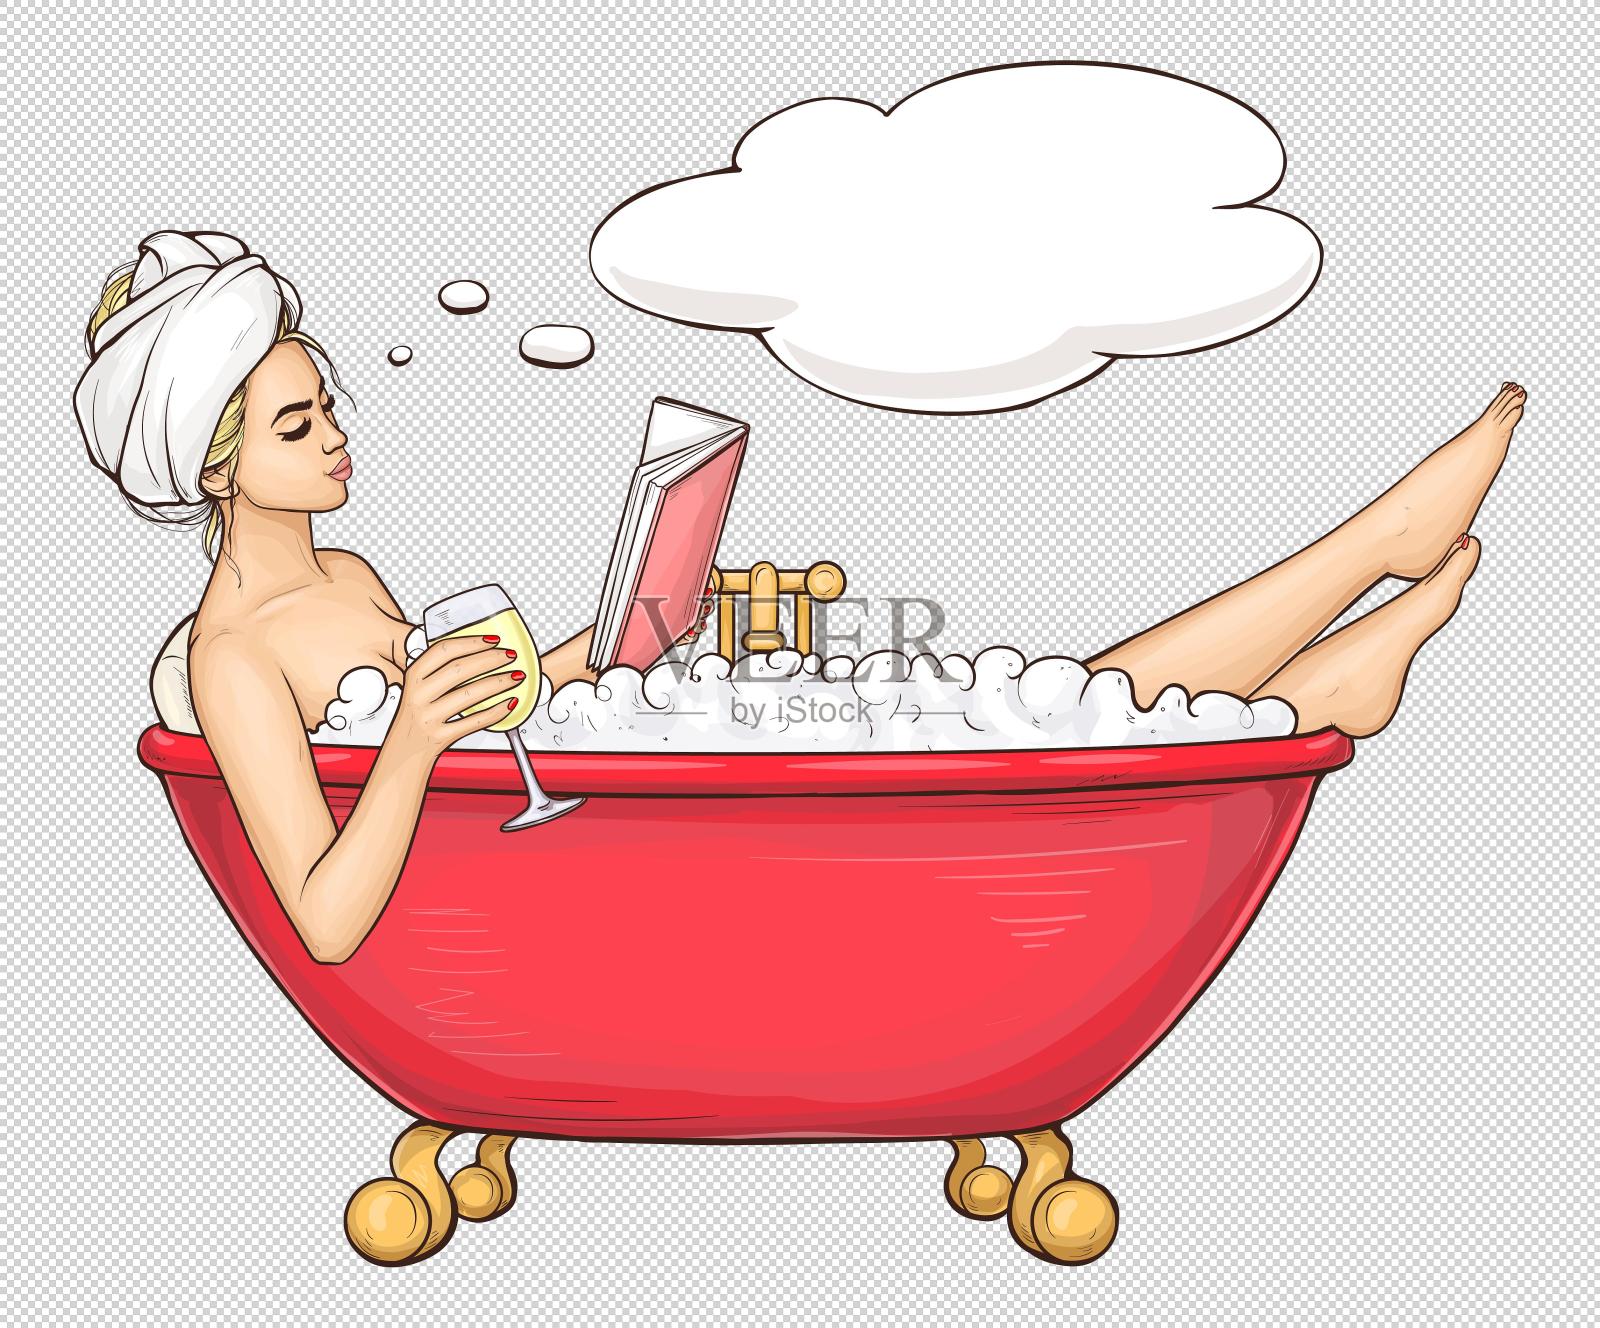 美女洗澡素材-美女洗澡图片-美女洗澡素材图片下载-觅知网